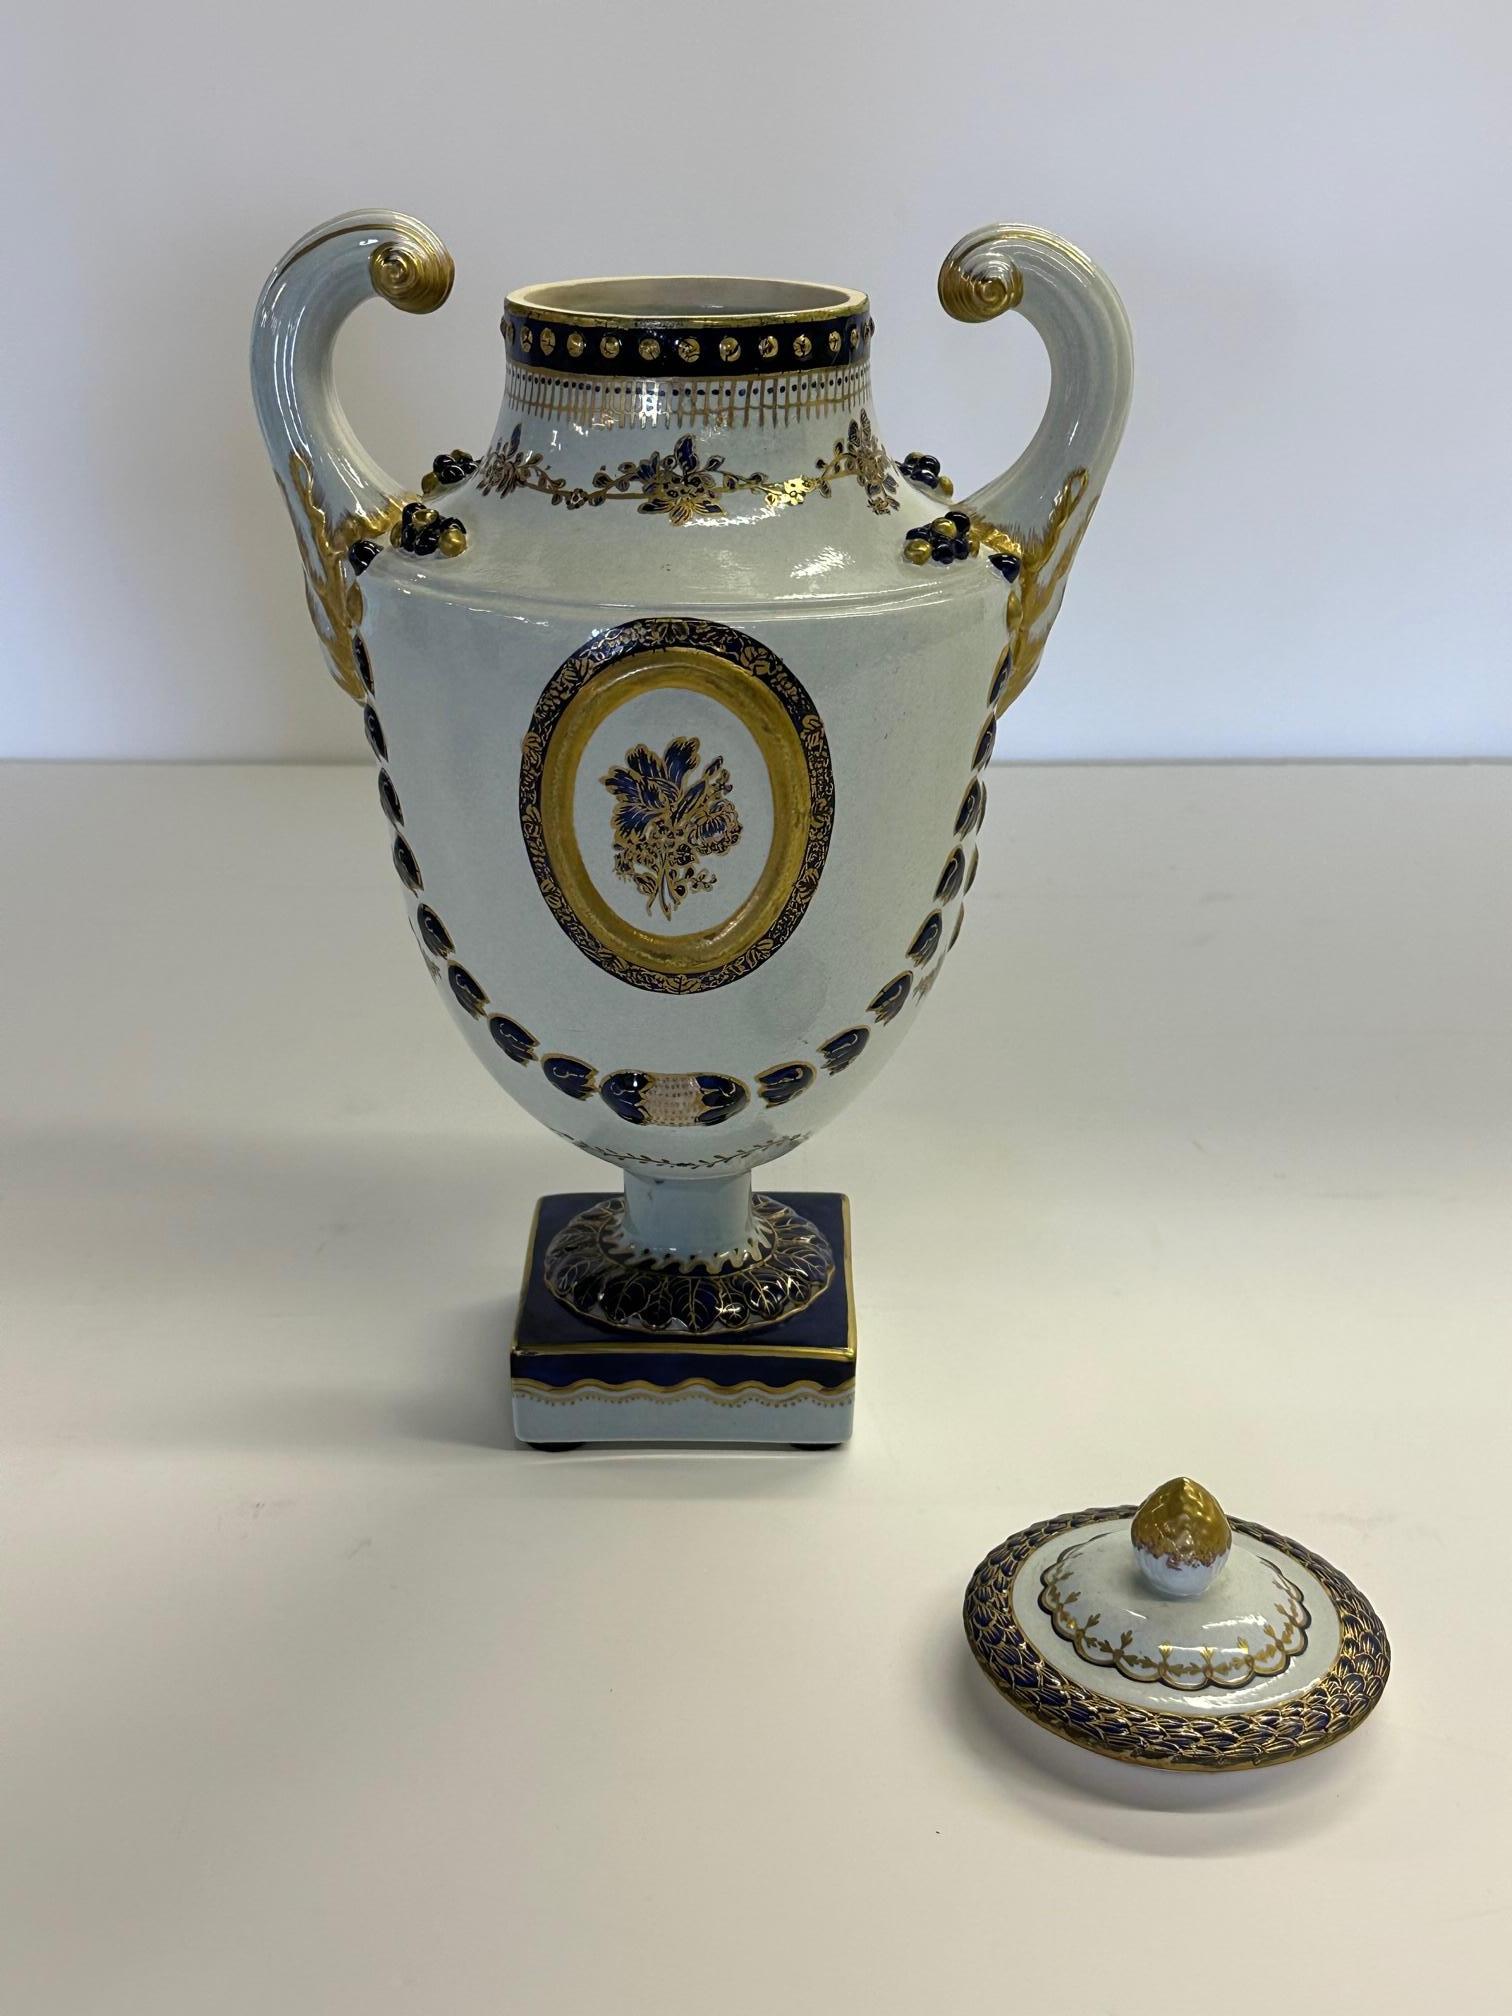 Belle paire classique d'urnes à couvercle de style Export chinois, peintes par Mottahedeh, présentant une palette de couleurs saisissante de blanc, bleu et or.
Bases arae 4 x 4